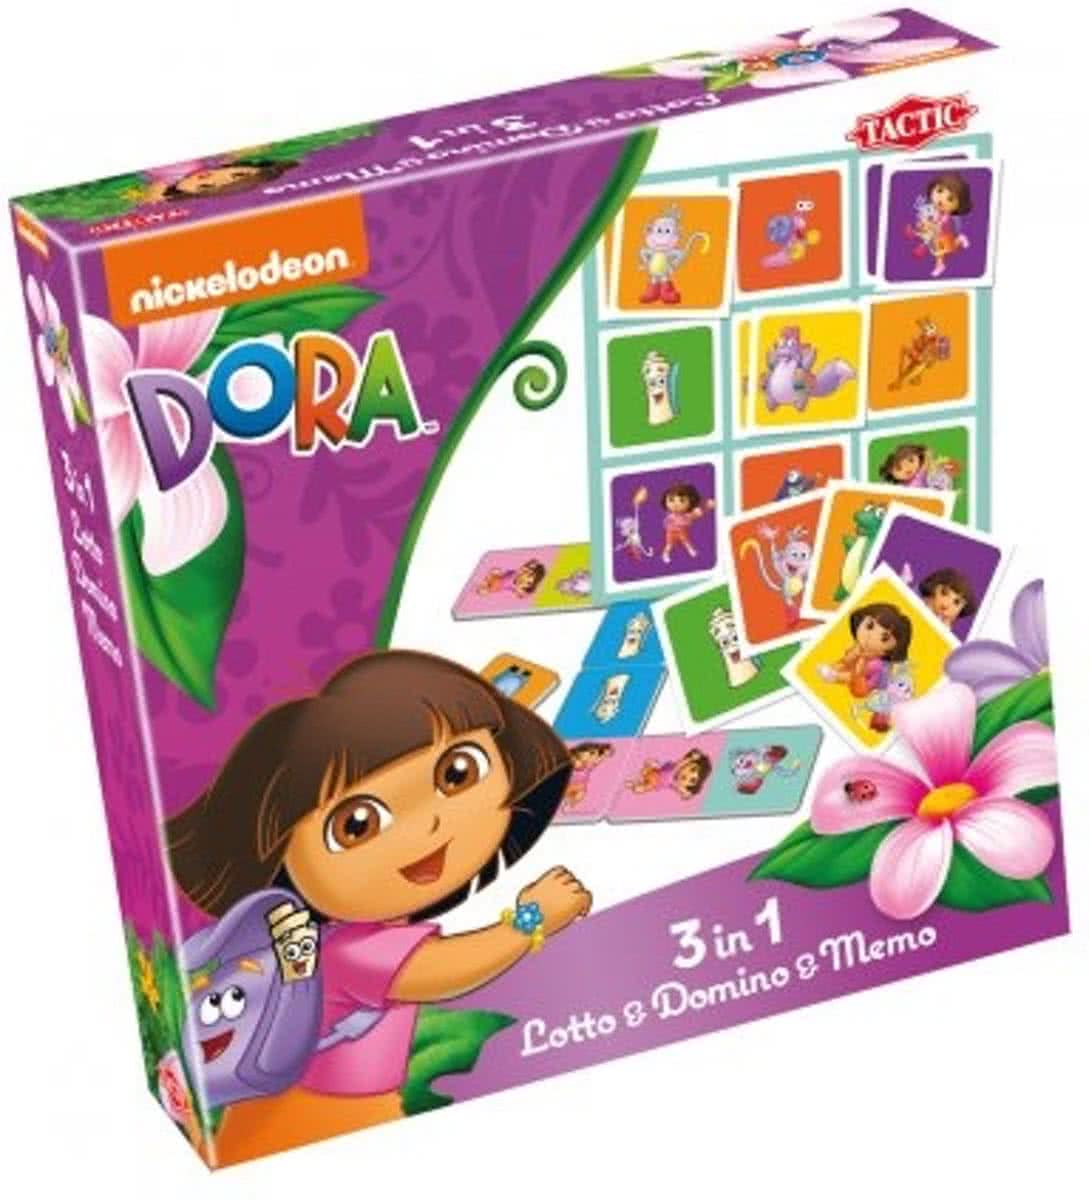 Dora 3in1 Lotto & Domino & Memo